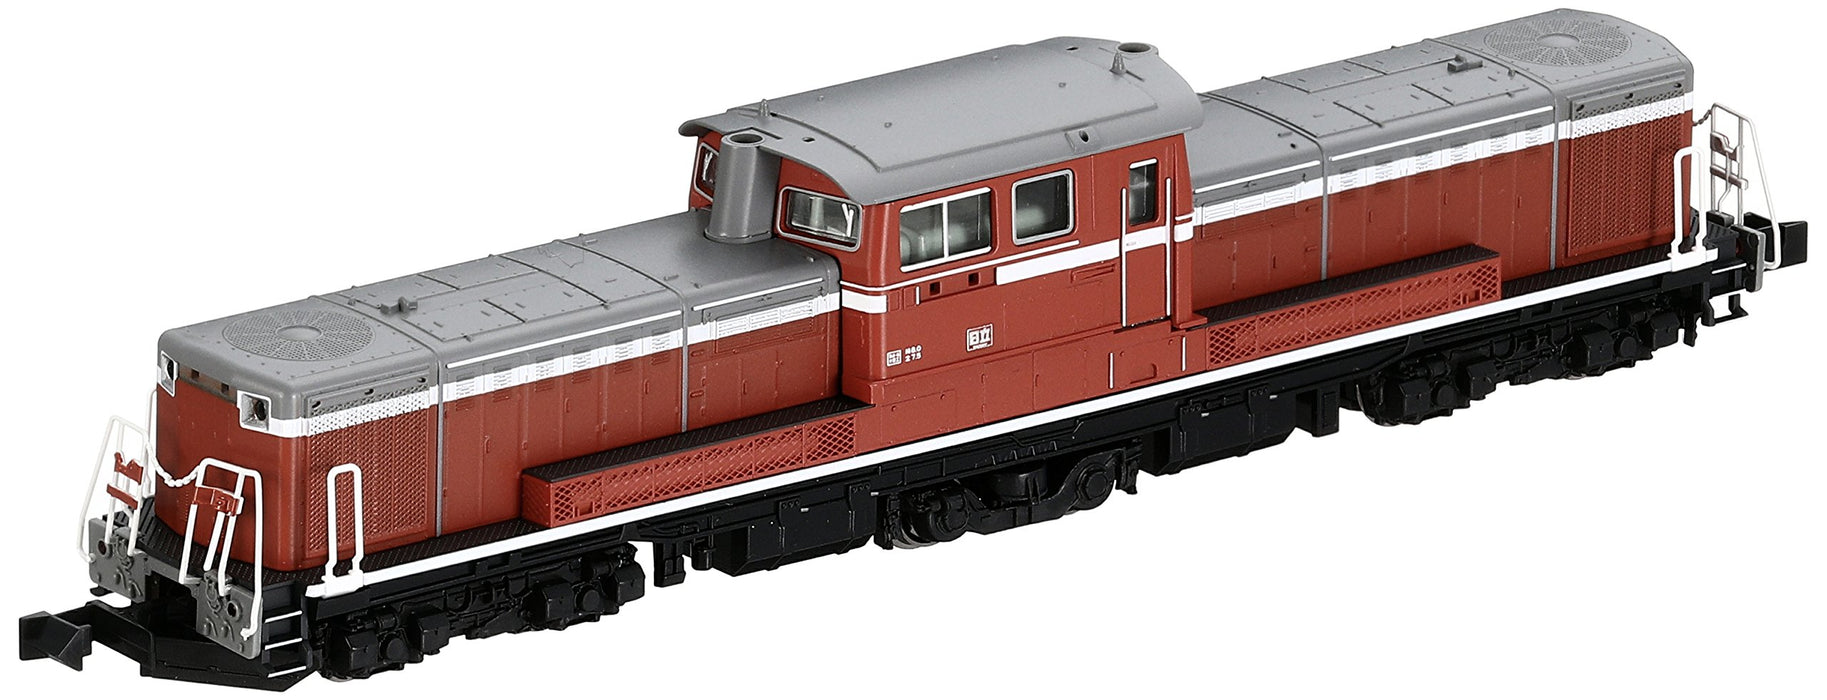 Kato N Gauge Diesel Locomotive: 800 Series 7008-6 Model Railway by Kato